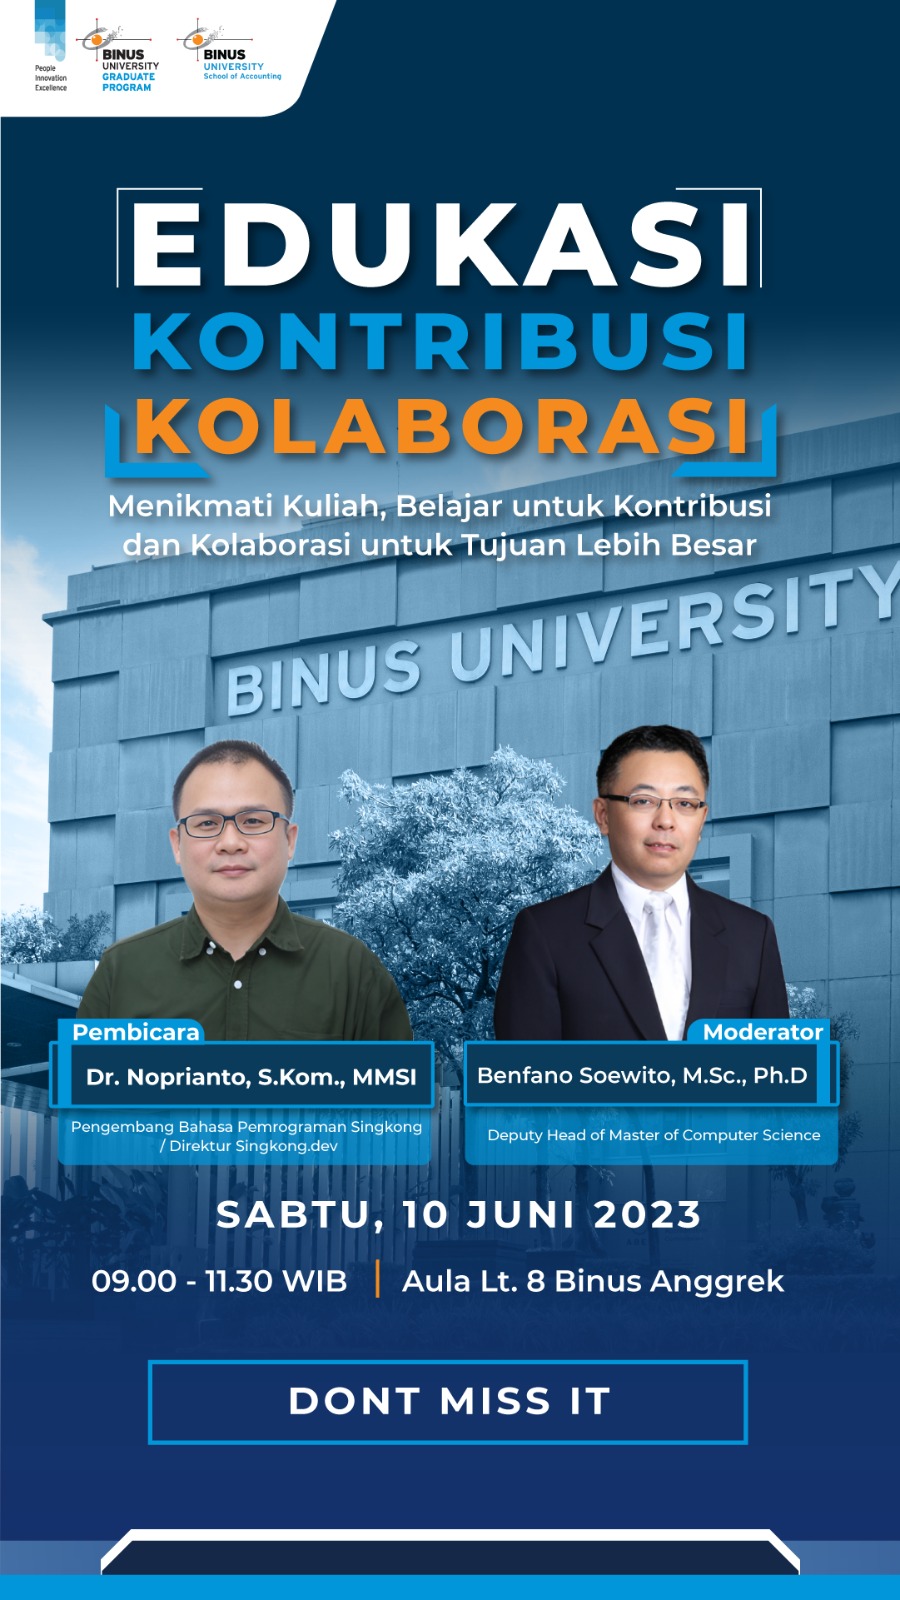 Binus Graduate Program: Edukasi, Kontribusi, Kolaborasi: Menikmati Kuliah, Belajar Untuk Kontribusi, dan Kolaborasi Untuk Tujuan Lebih Besar